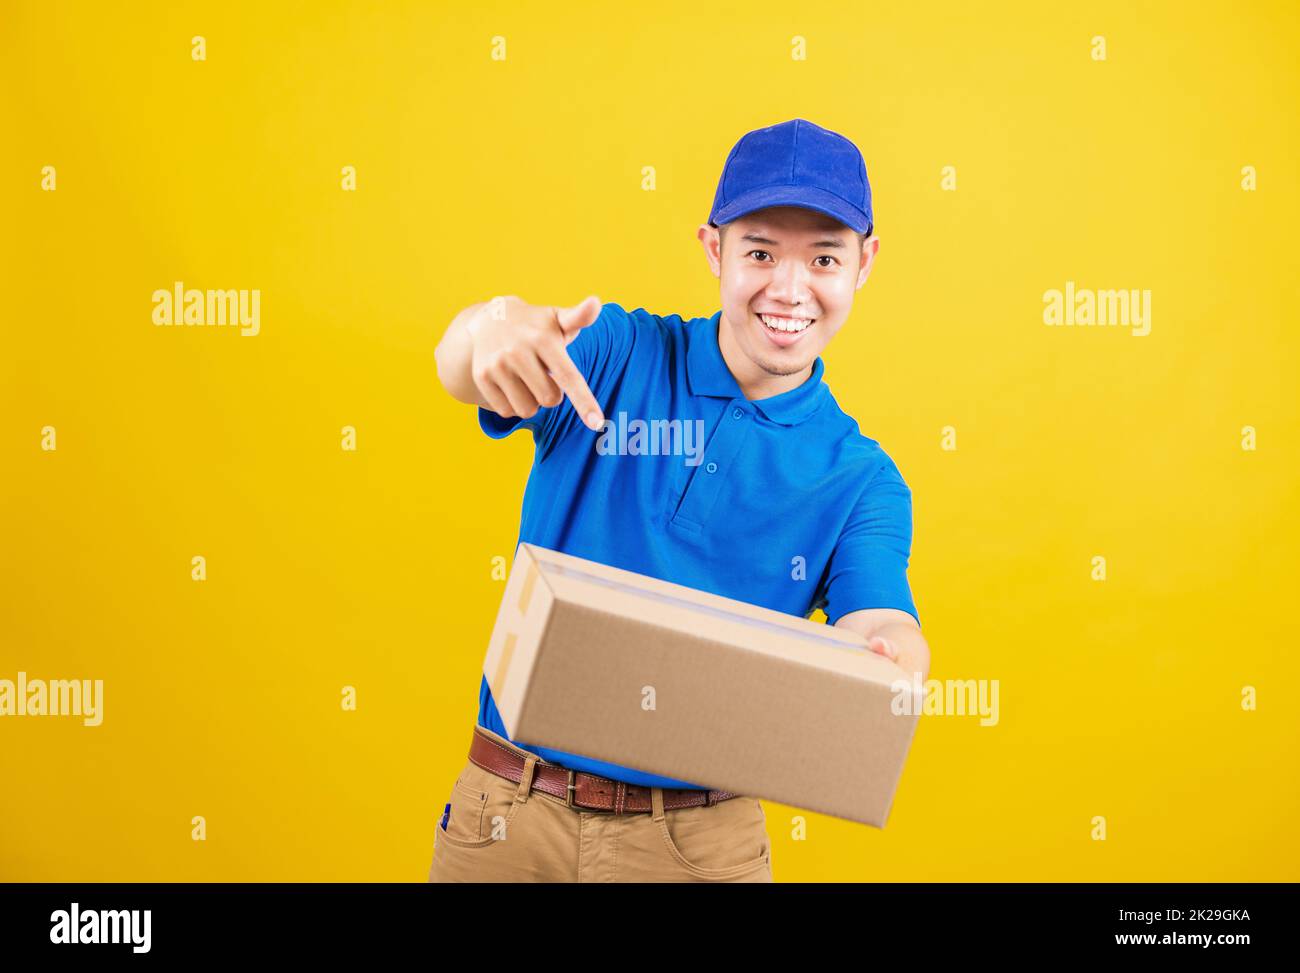 Lieferung glücklicher Mann logistisch stehend lächelt er trägt ein blaues T-Shirt und eine Kappe Uniform hält Paketkiste mit dem Finger auf die Kiste zeigt Stockfoto